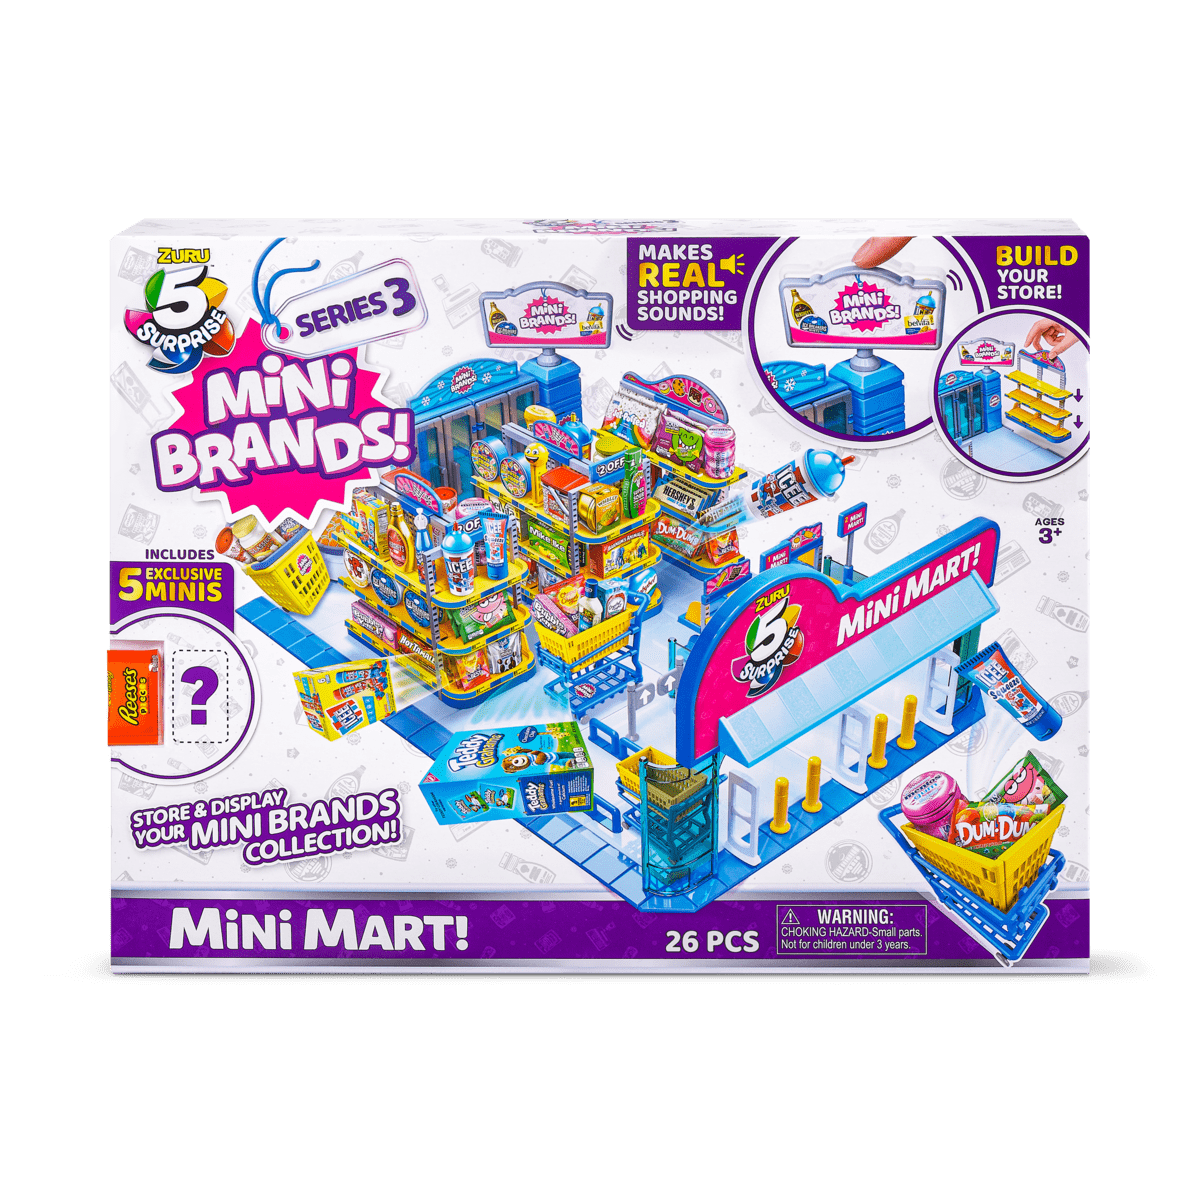 Mini Brands Mini Mart Series 3 in Box